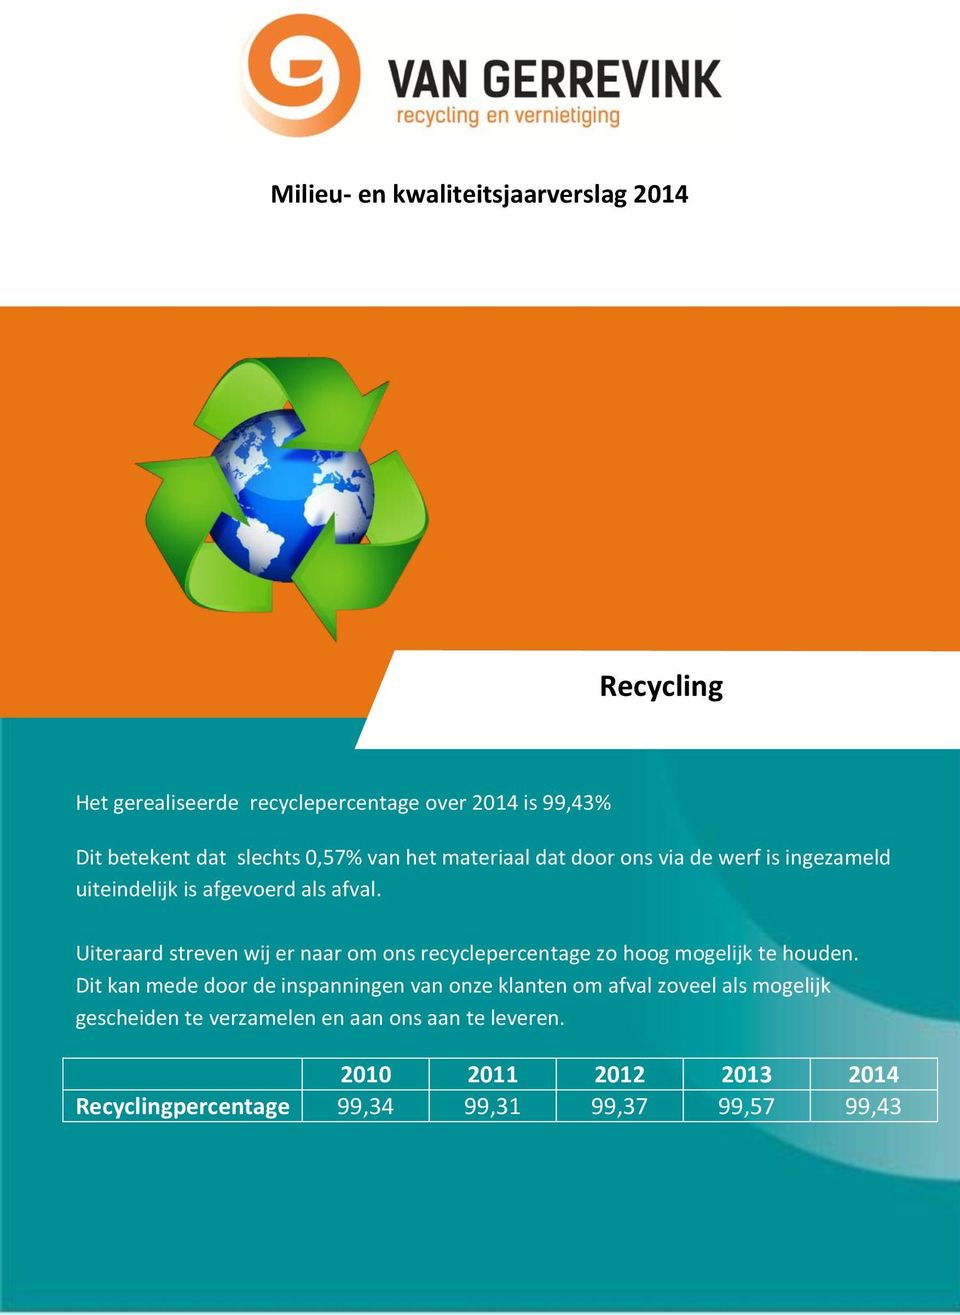 Uiteraard streven wij er naar om ons recyclepercentage zo hoog mogelijk te houden.